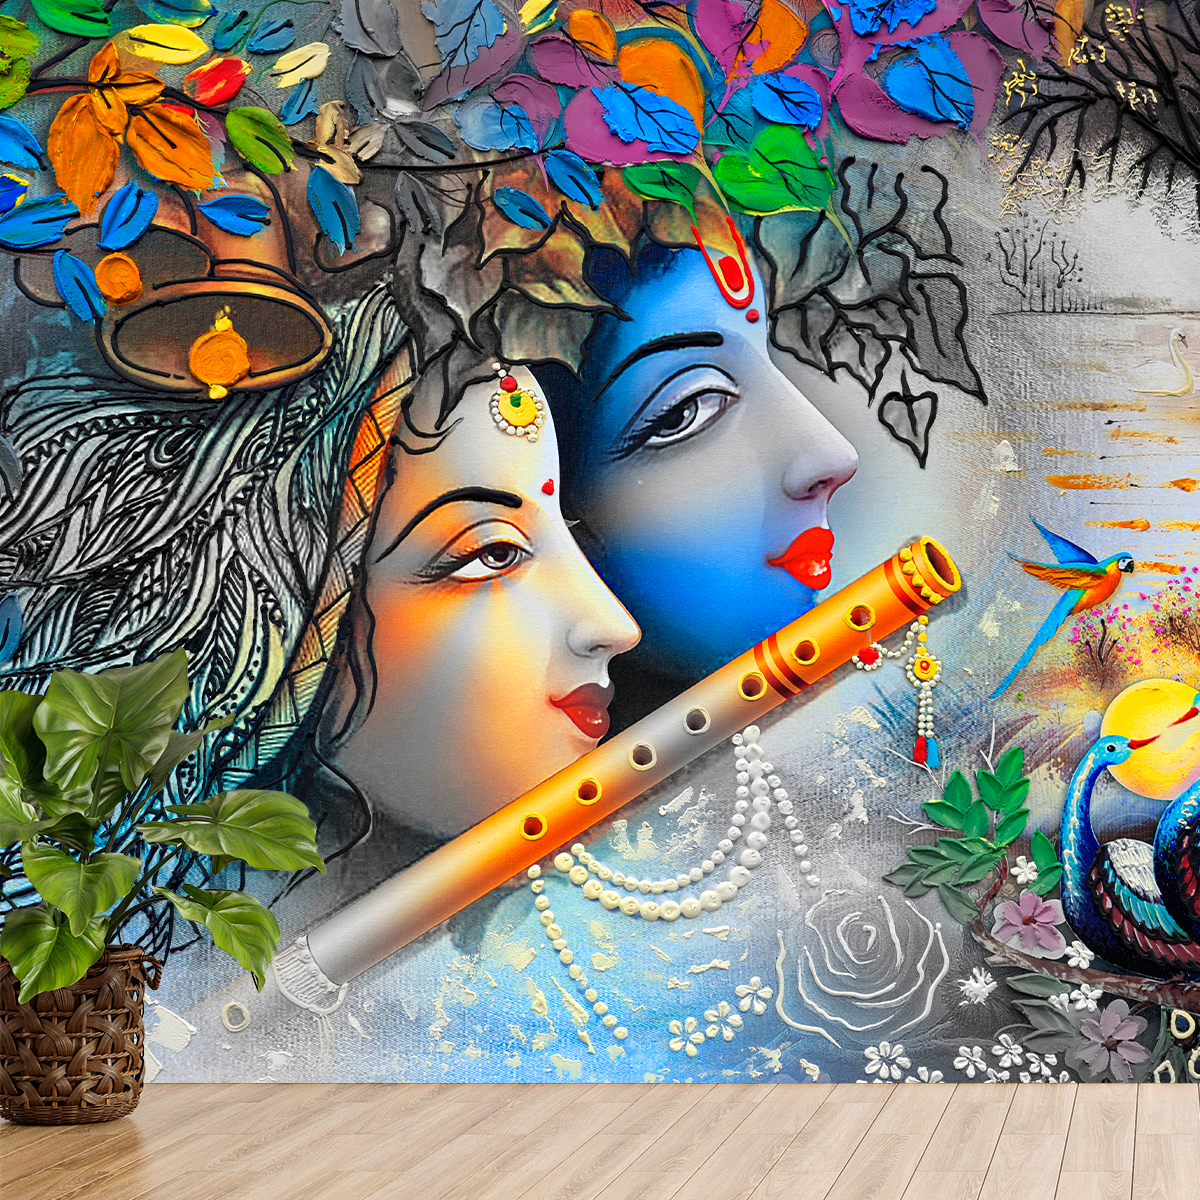 Premium Radha Krishna Wallpaper for Temple Decors | HD Self Adhesive Wallpapers